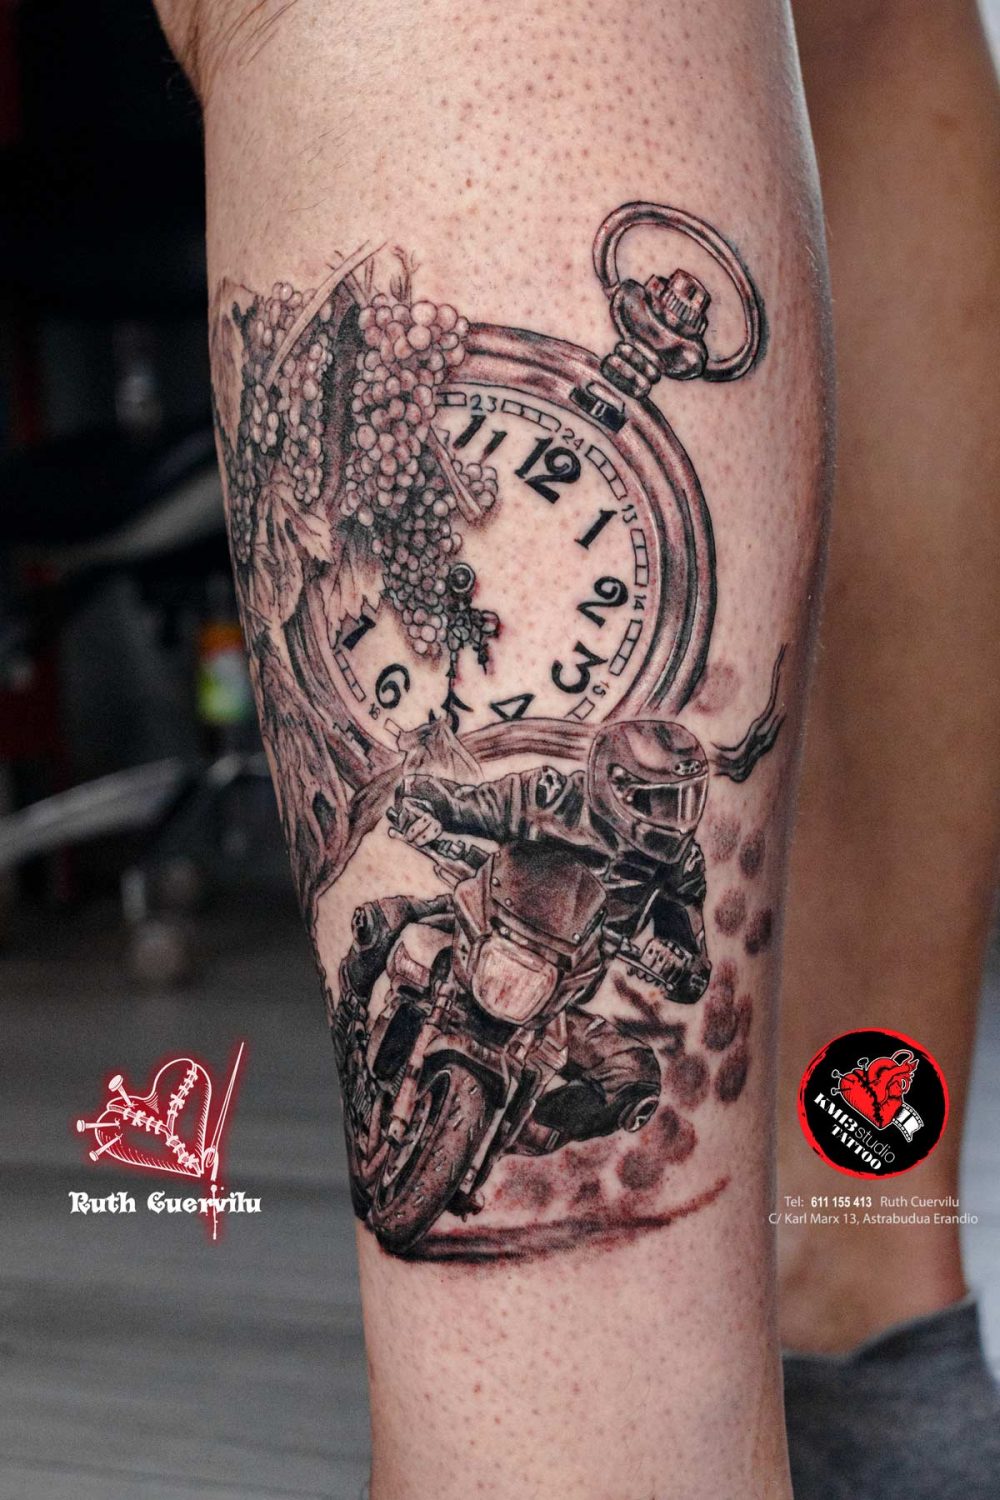 Tatuaje Moto Reloj viñas en Realismo - Ruth Cuervilu Tattoo - KM13 Studio - estudio de tatuajes erandio astrabudua bilbao bizkaia